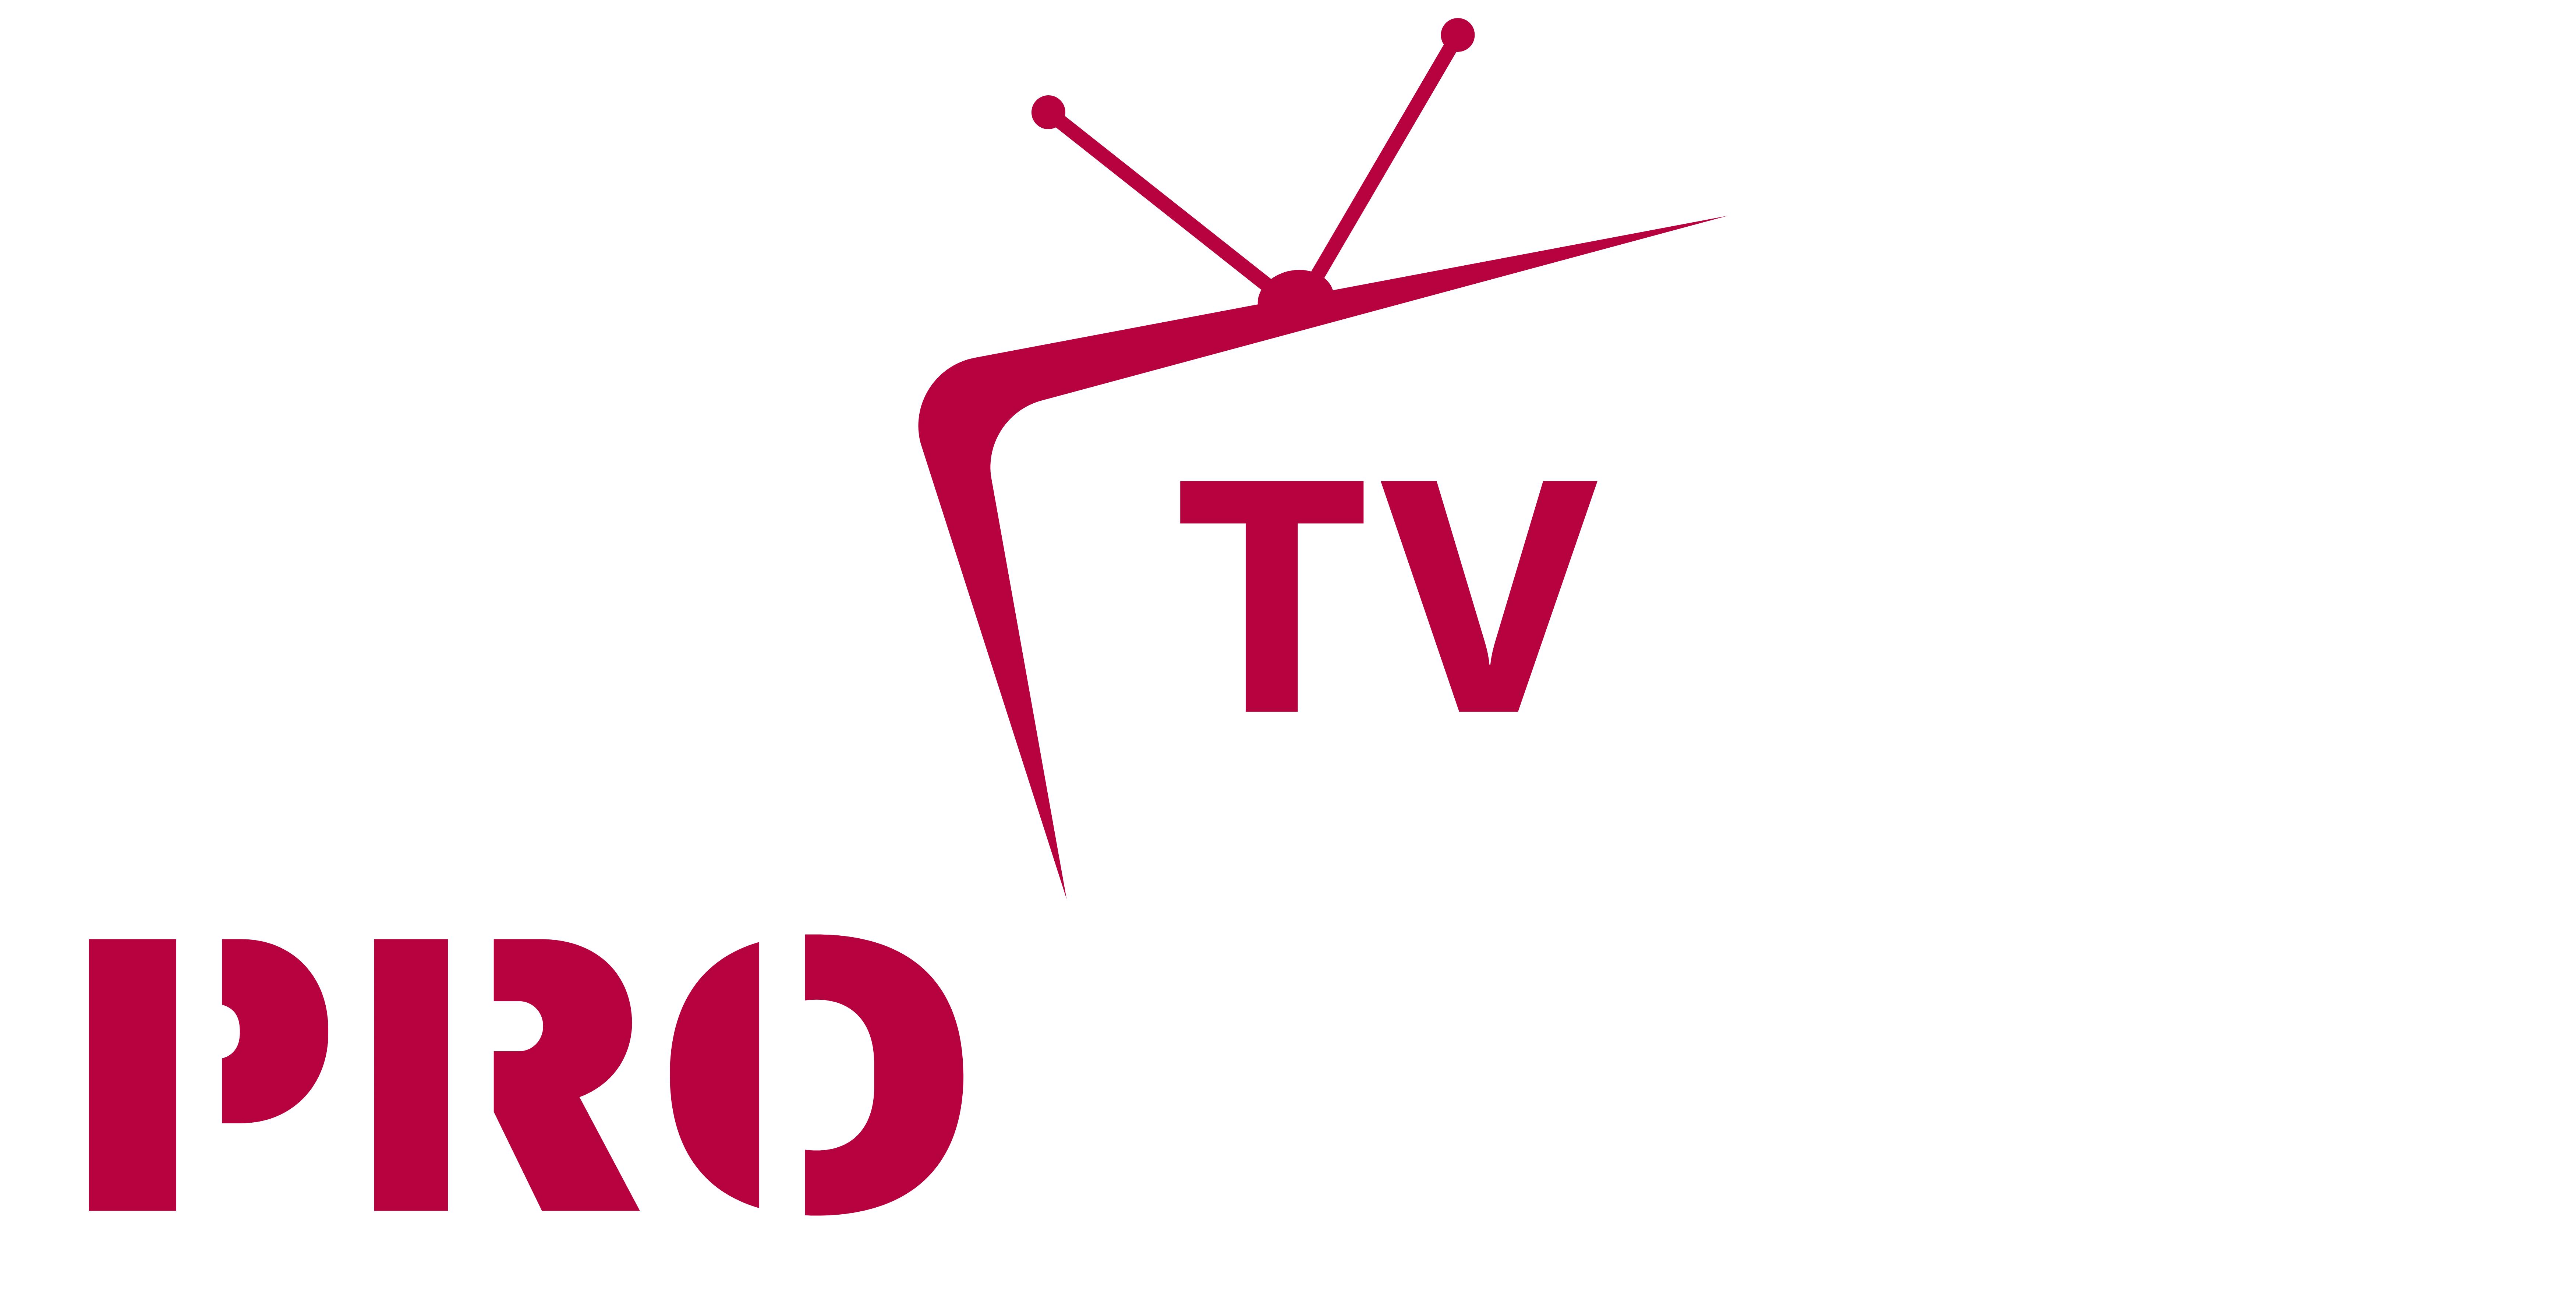 Pro Smarters TV